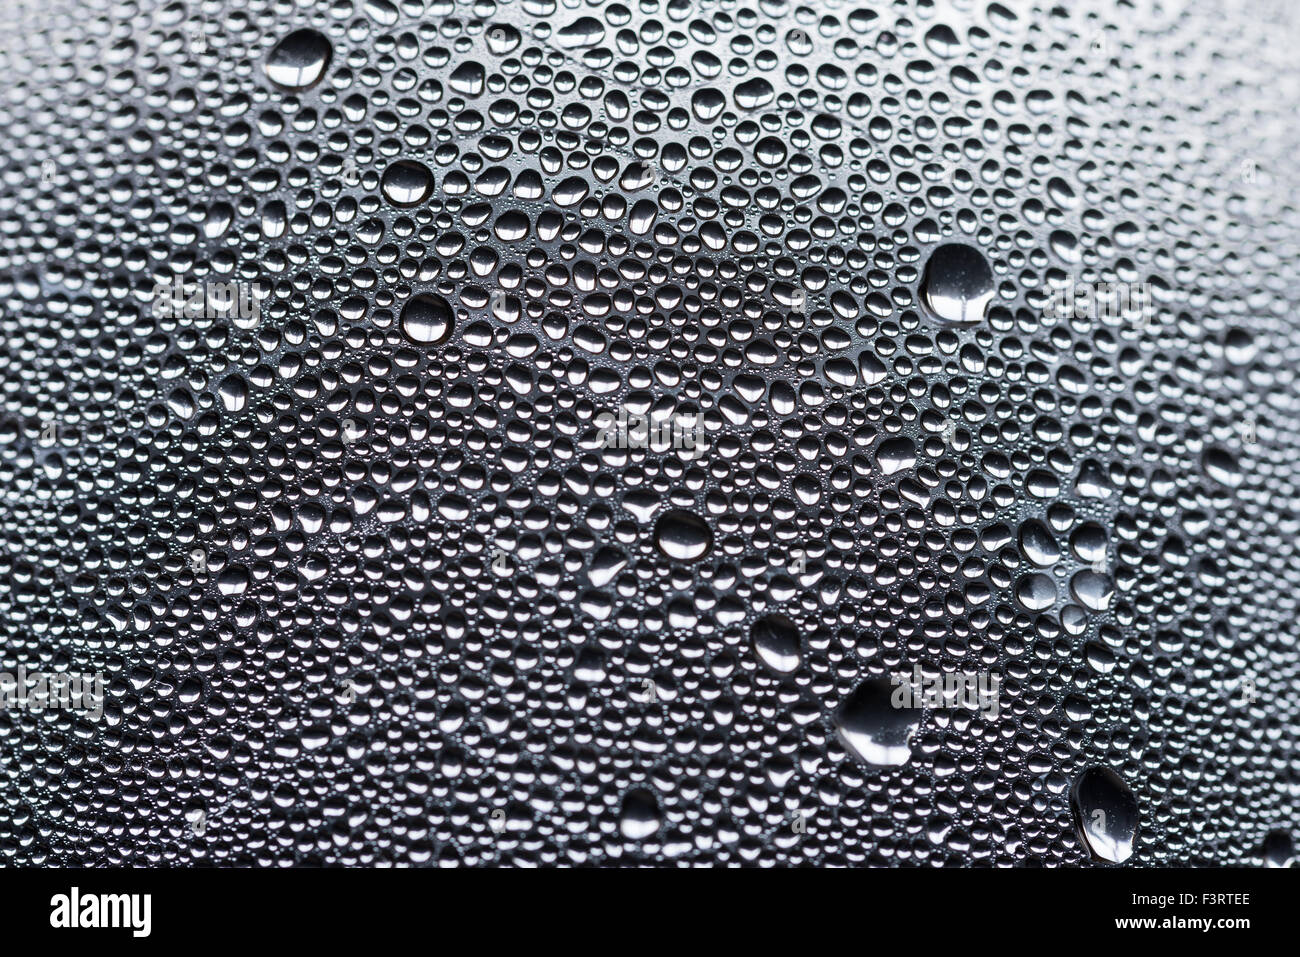 Beaucoup de petites gouttes d'eau due à la condensation sur une surface courbe bouteille en plastique Banque D'Images